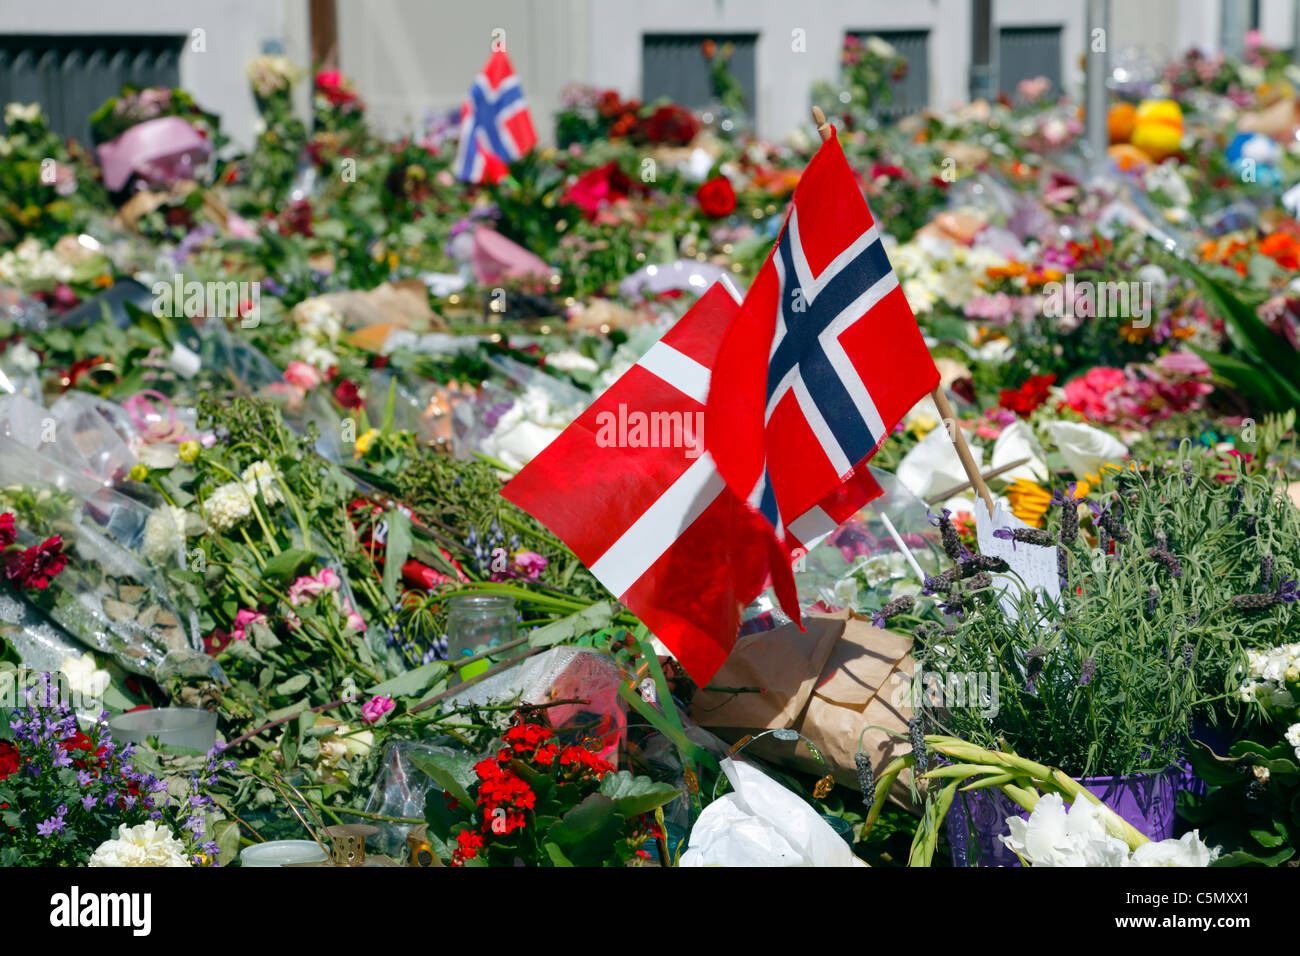 Mittwoch, 27. Juli 2011 - Blumen, Fahnen, Briefe, Kerzen, Zeichnungen usw. in Sympathie vor der norwegischen Botschaft in Kopenhagen Stockfoto